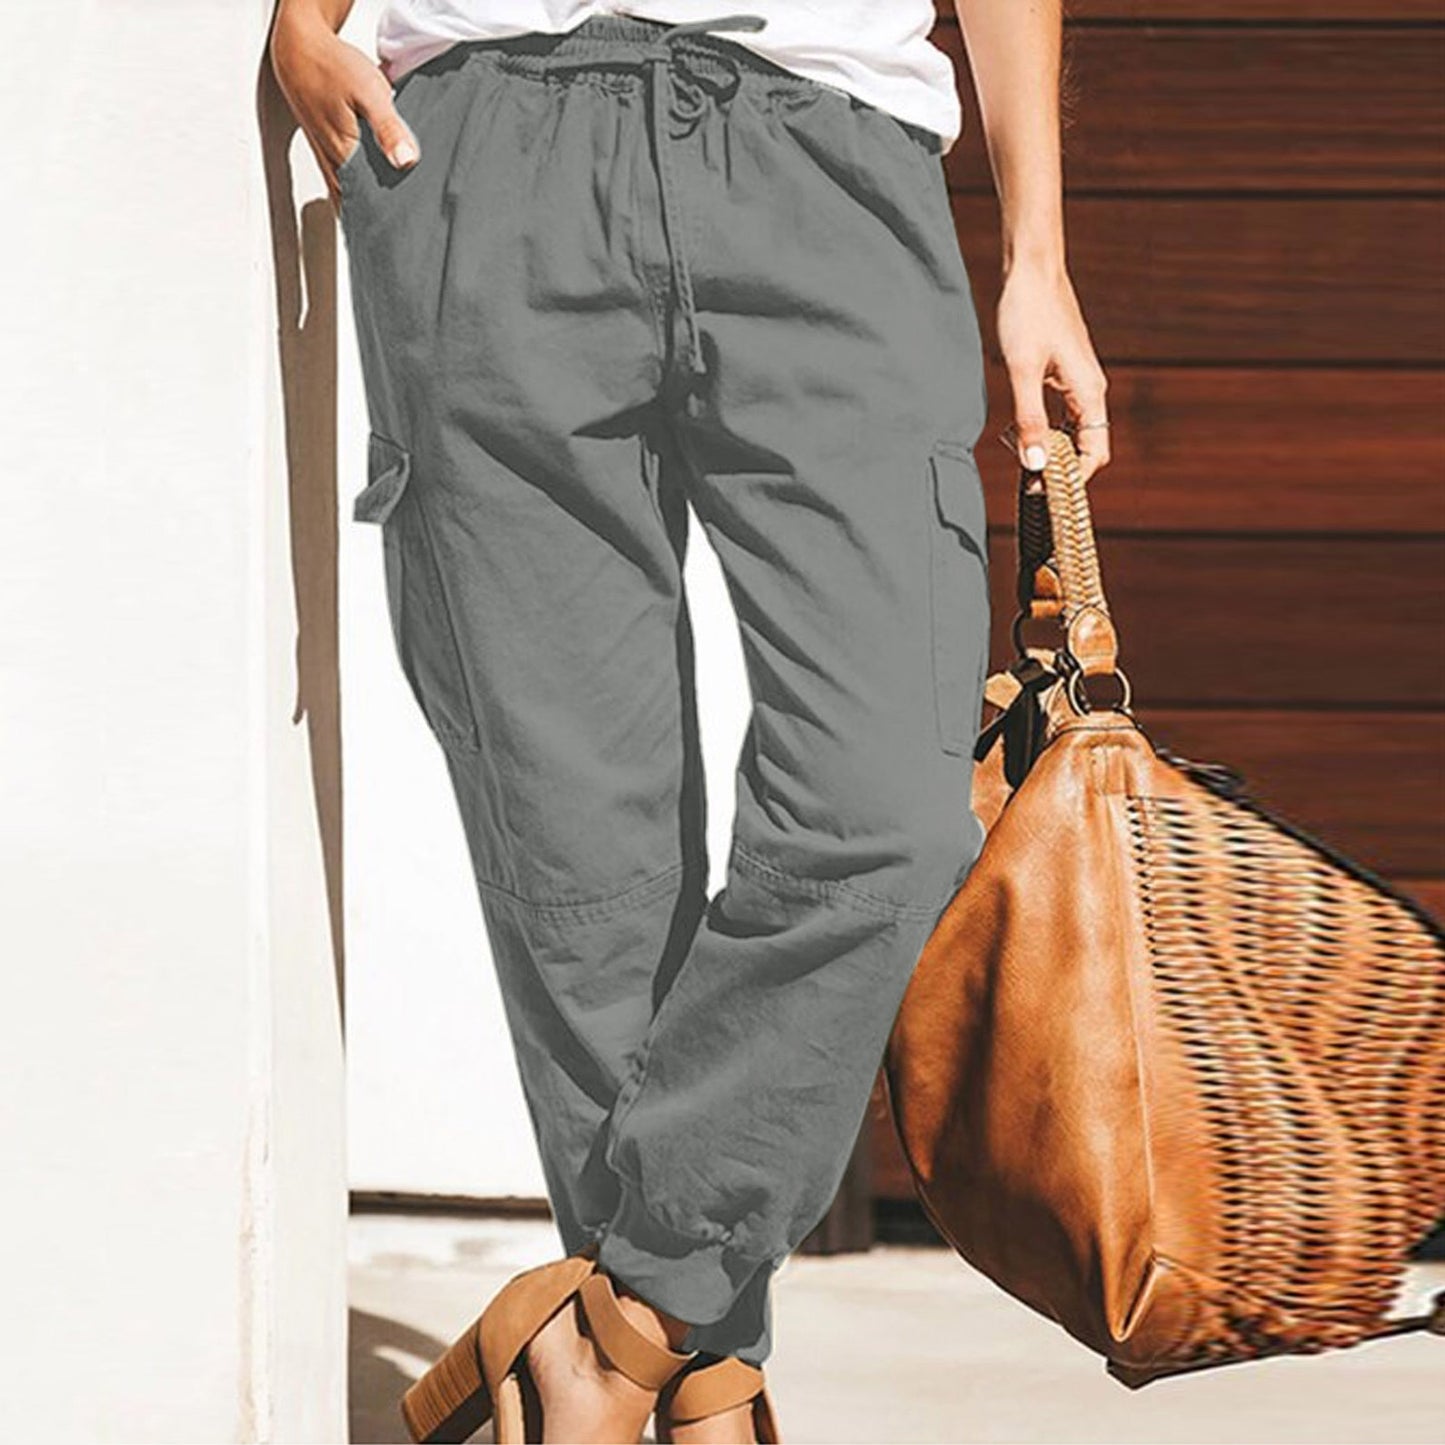 Pantalon cargo Genève coton stretch, élastique, 3 couleurs, 8 GRANDES TAILLES